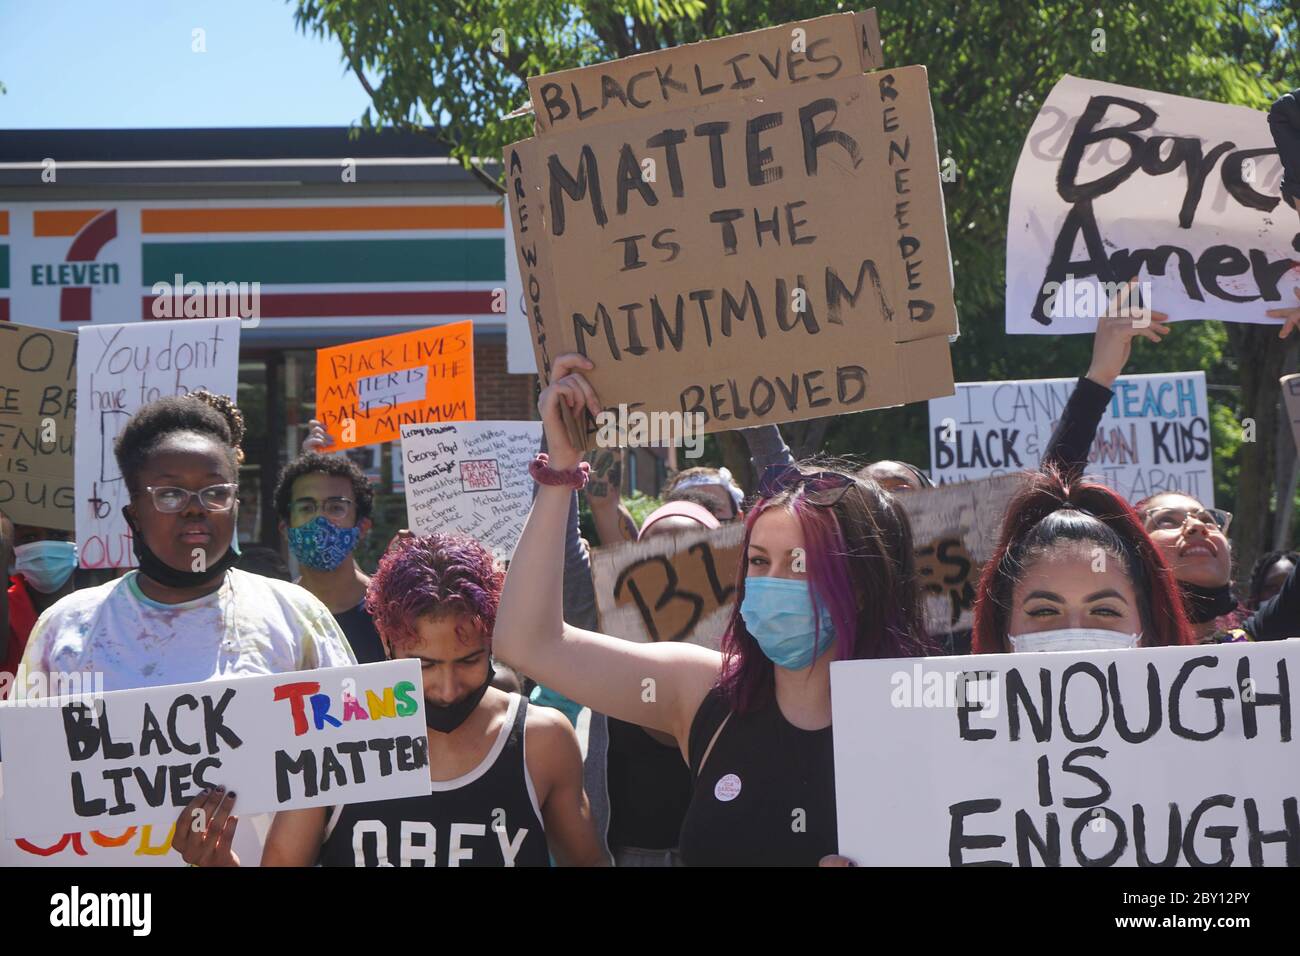 George Floyd Black Lives Matter Protest - des jeunes tenant des signes, assez est assez photo de stock - Ridgefield Park, New Jersey, Etats-Unis, le 8t juin Banque D'Images